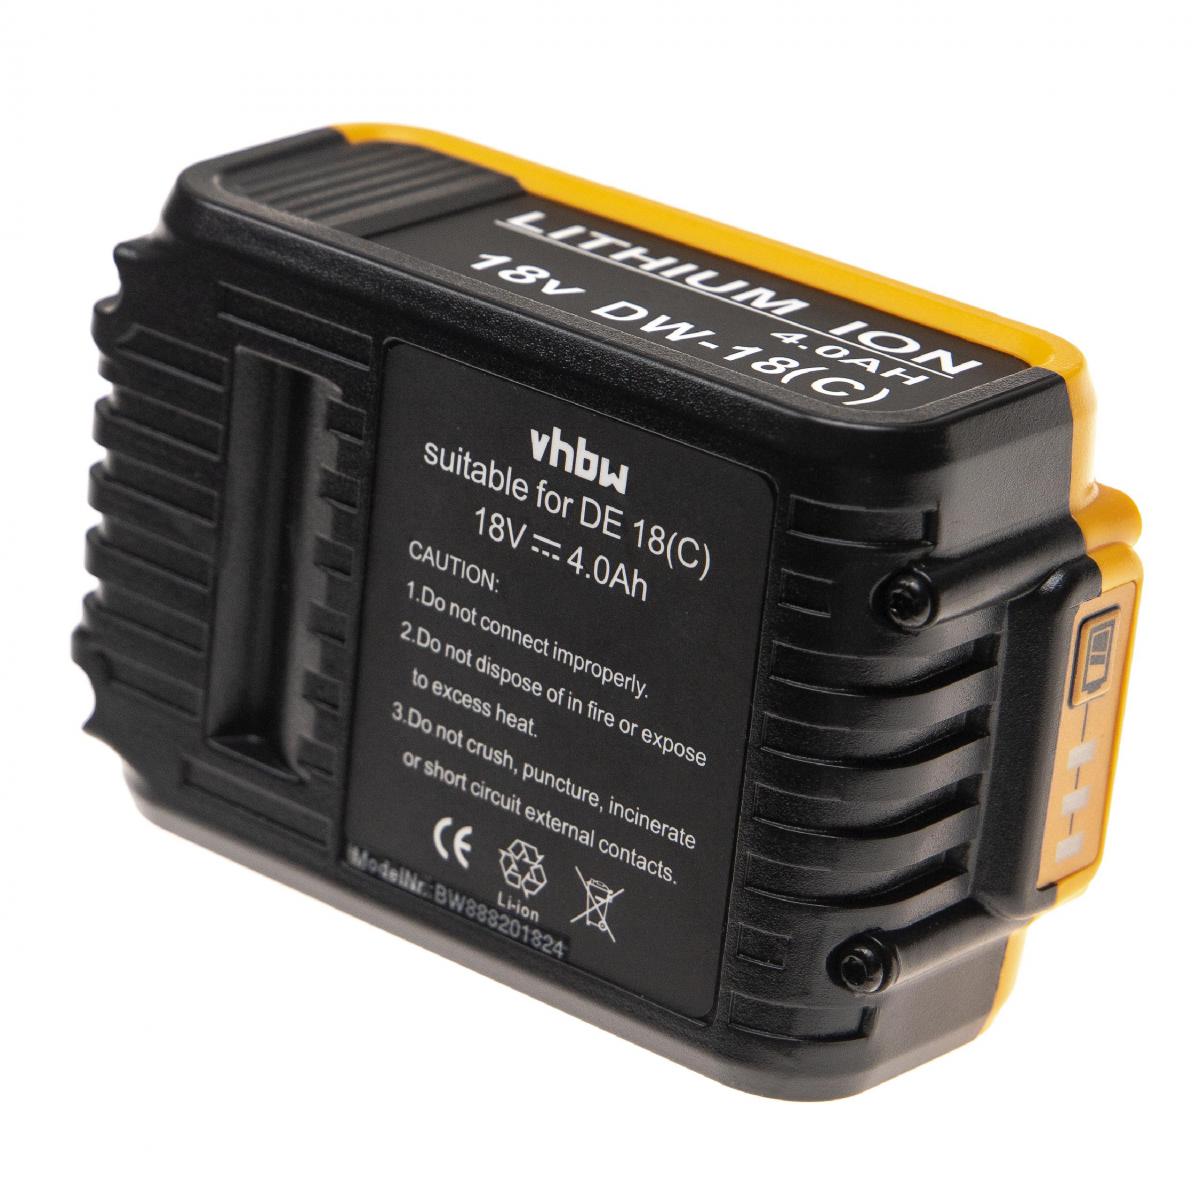 Vhbw - vhbw Batterie compatible avec Dewalt DCF885L2, DCF885M2, DCF886, DCF886D2, DCF886M2, DCF889, DCF889HL2 outil électrique (4000mAh Li-Ion 18V) - Clouterie